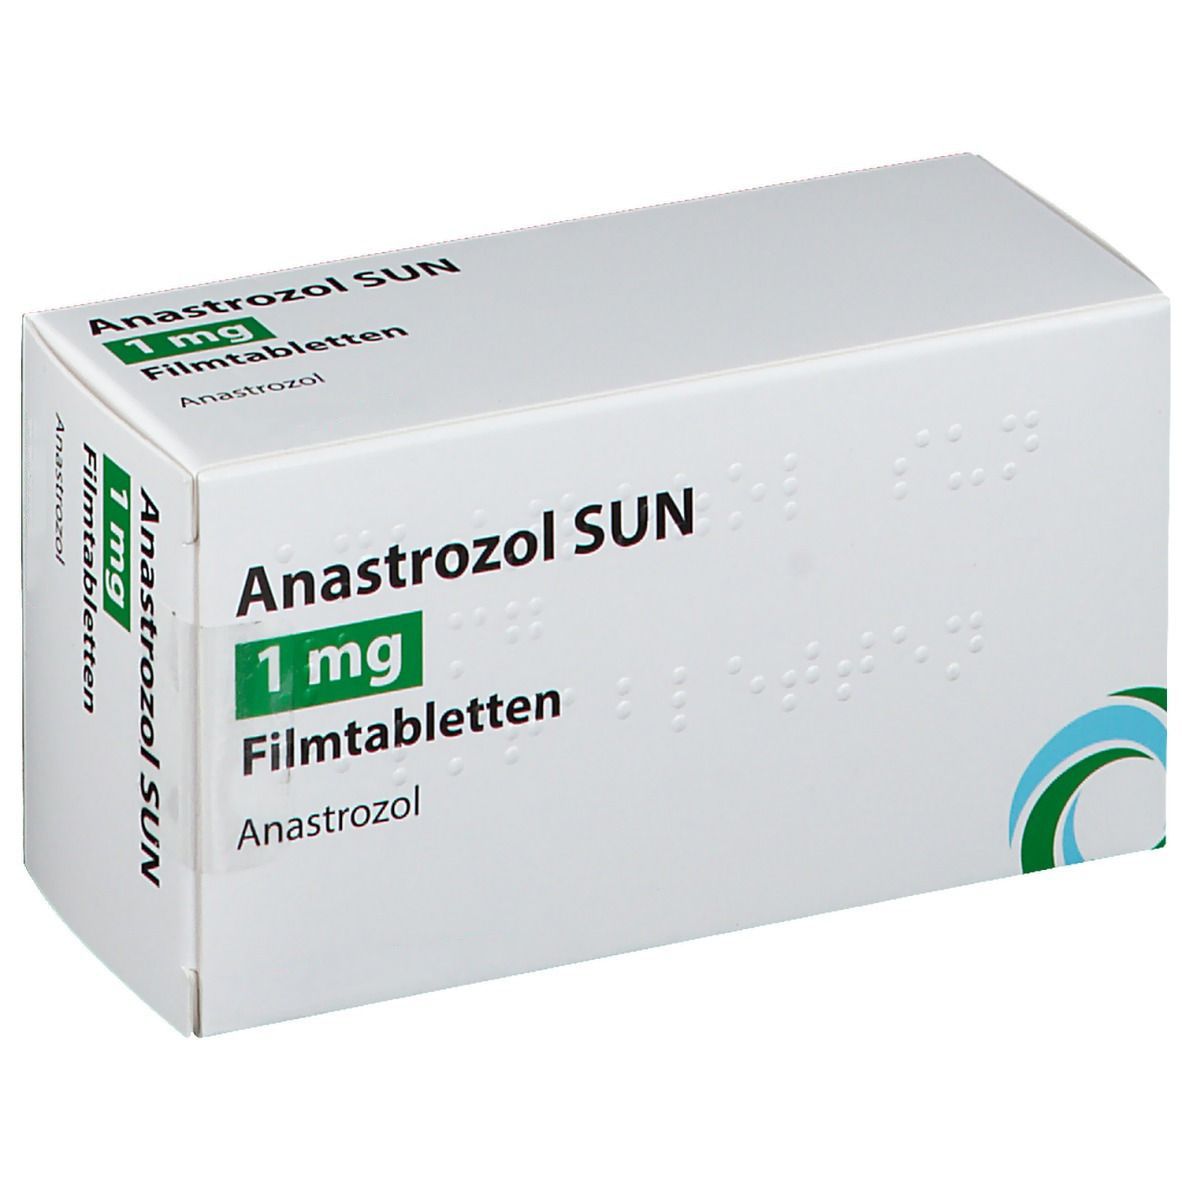 Anastrozol SUN 1 mg Filmtabletten